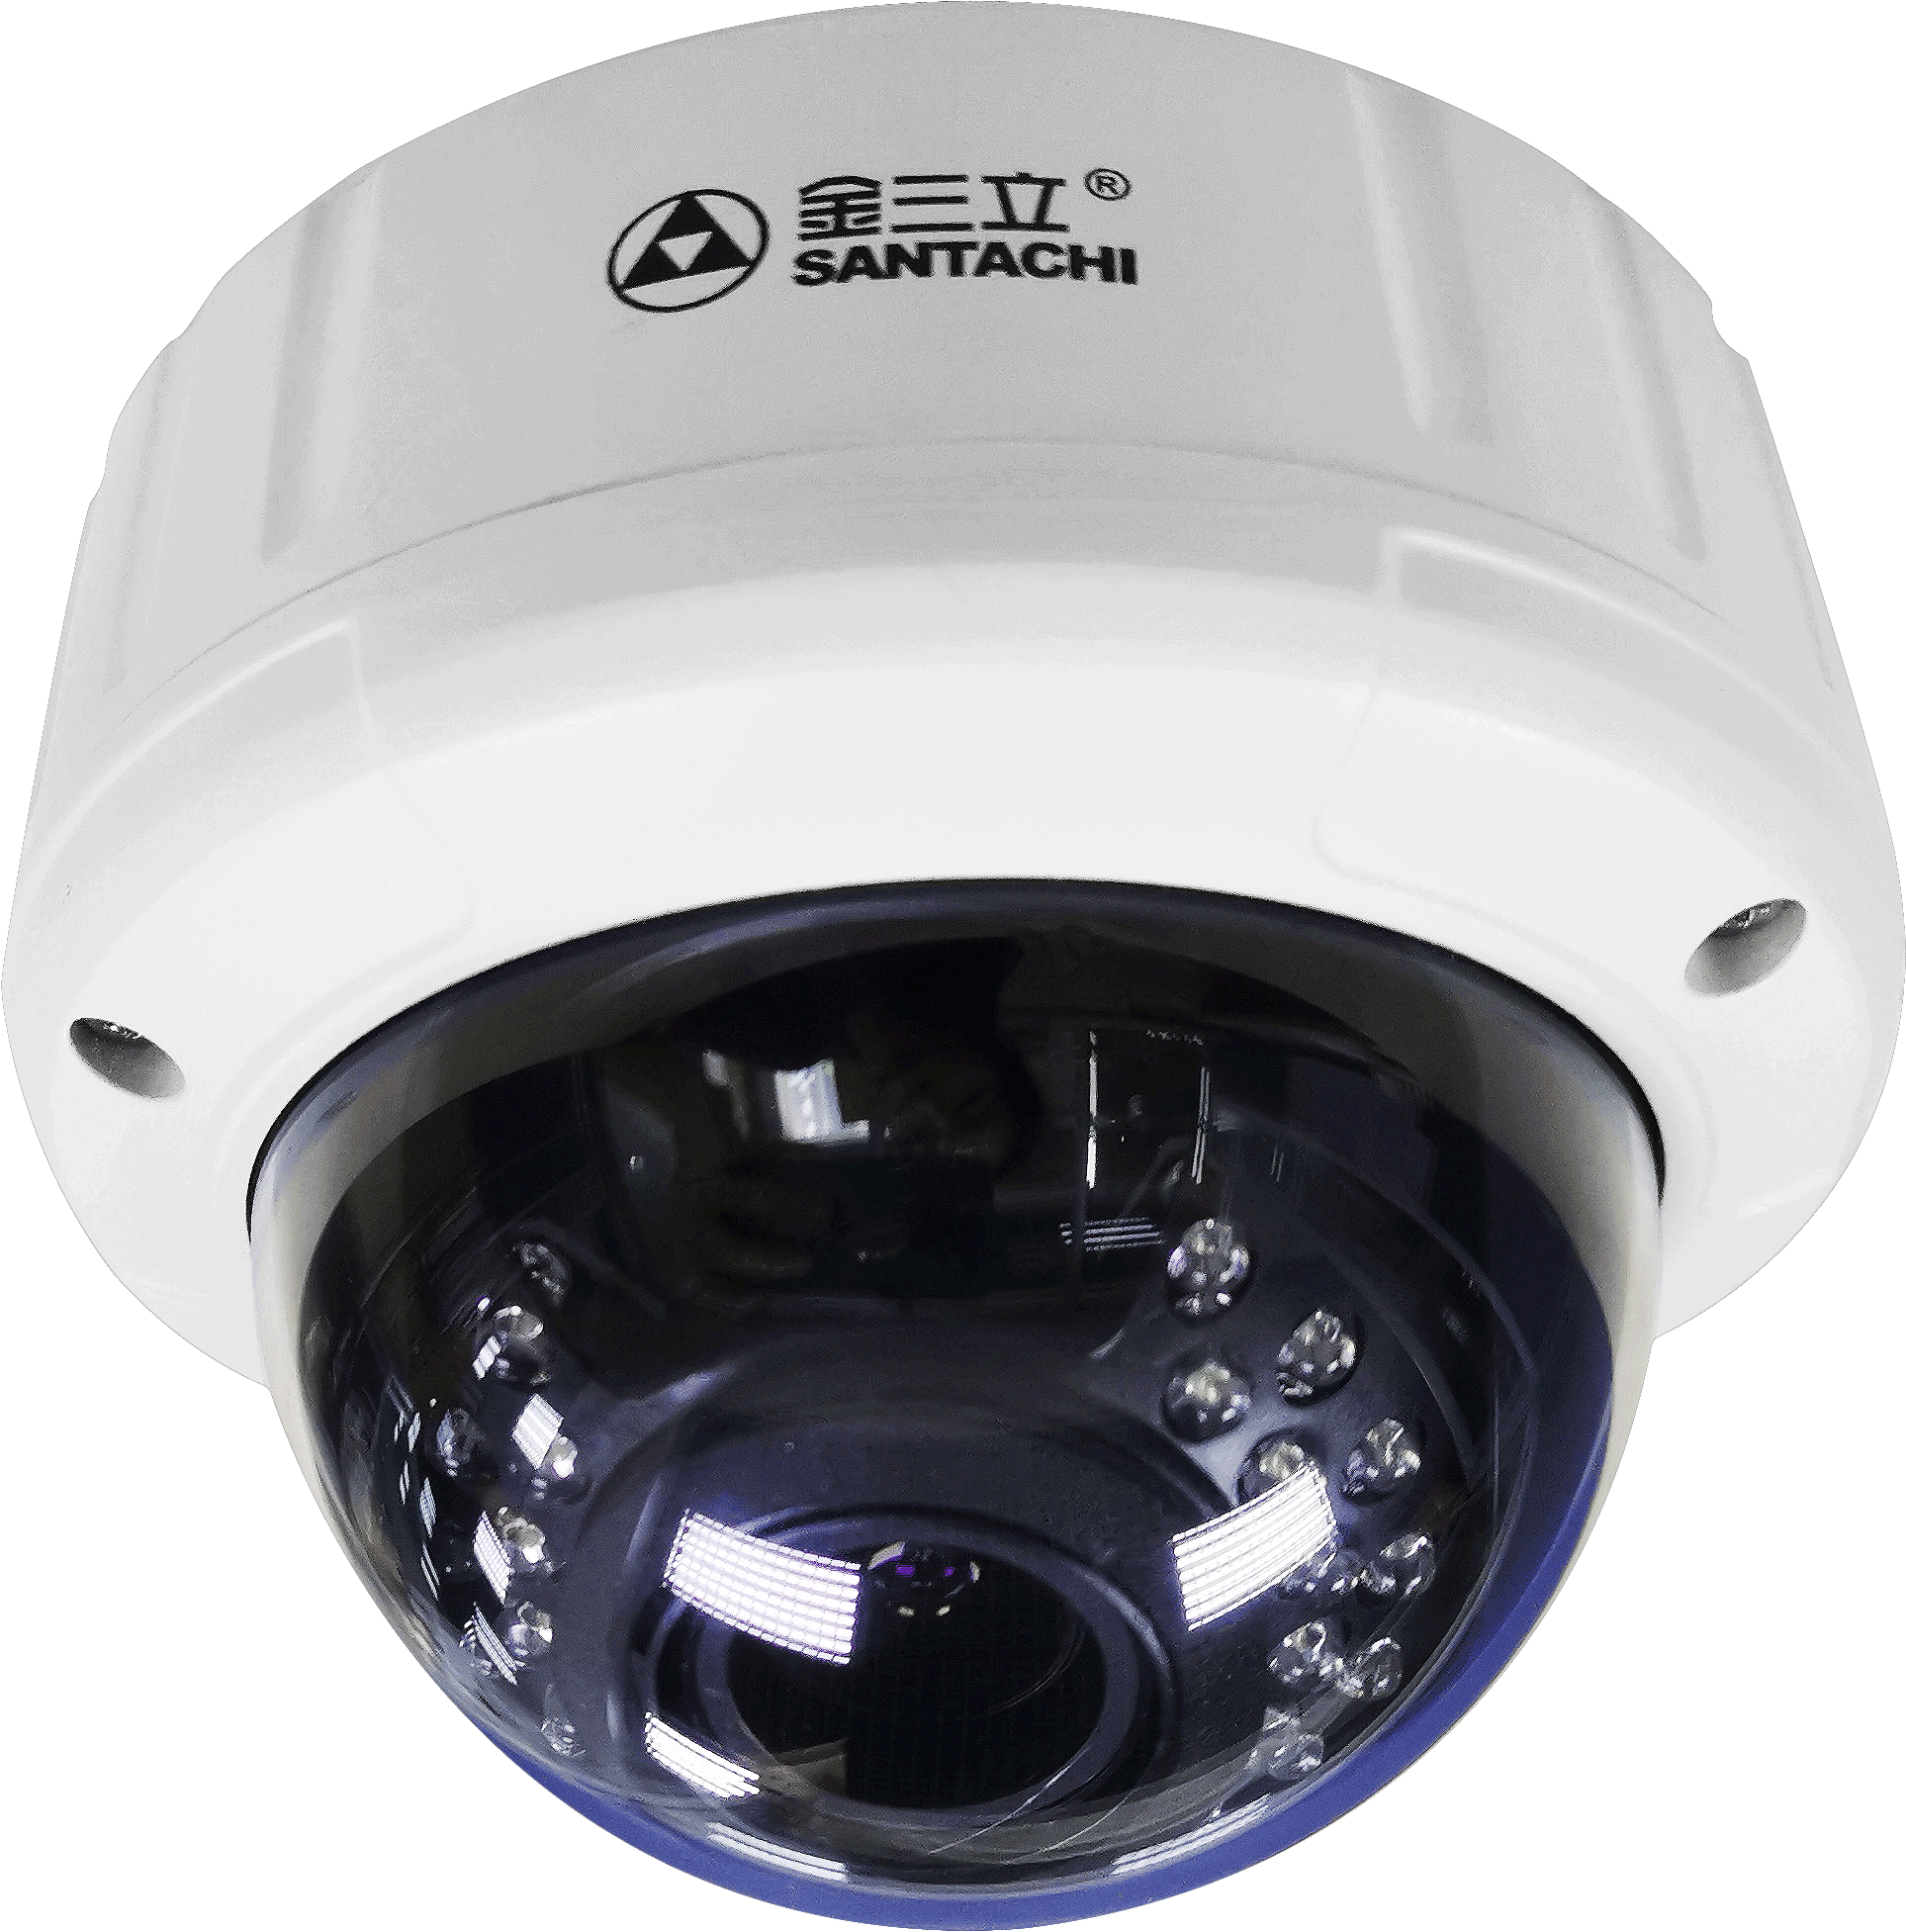 智能高清红外半球摄像机 ST-NT406